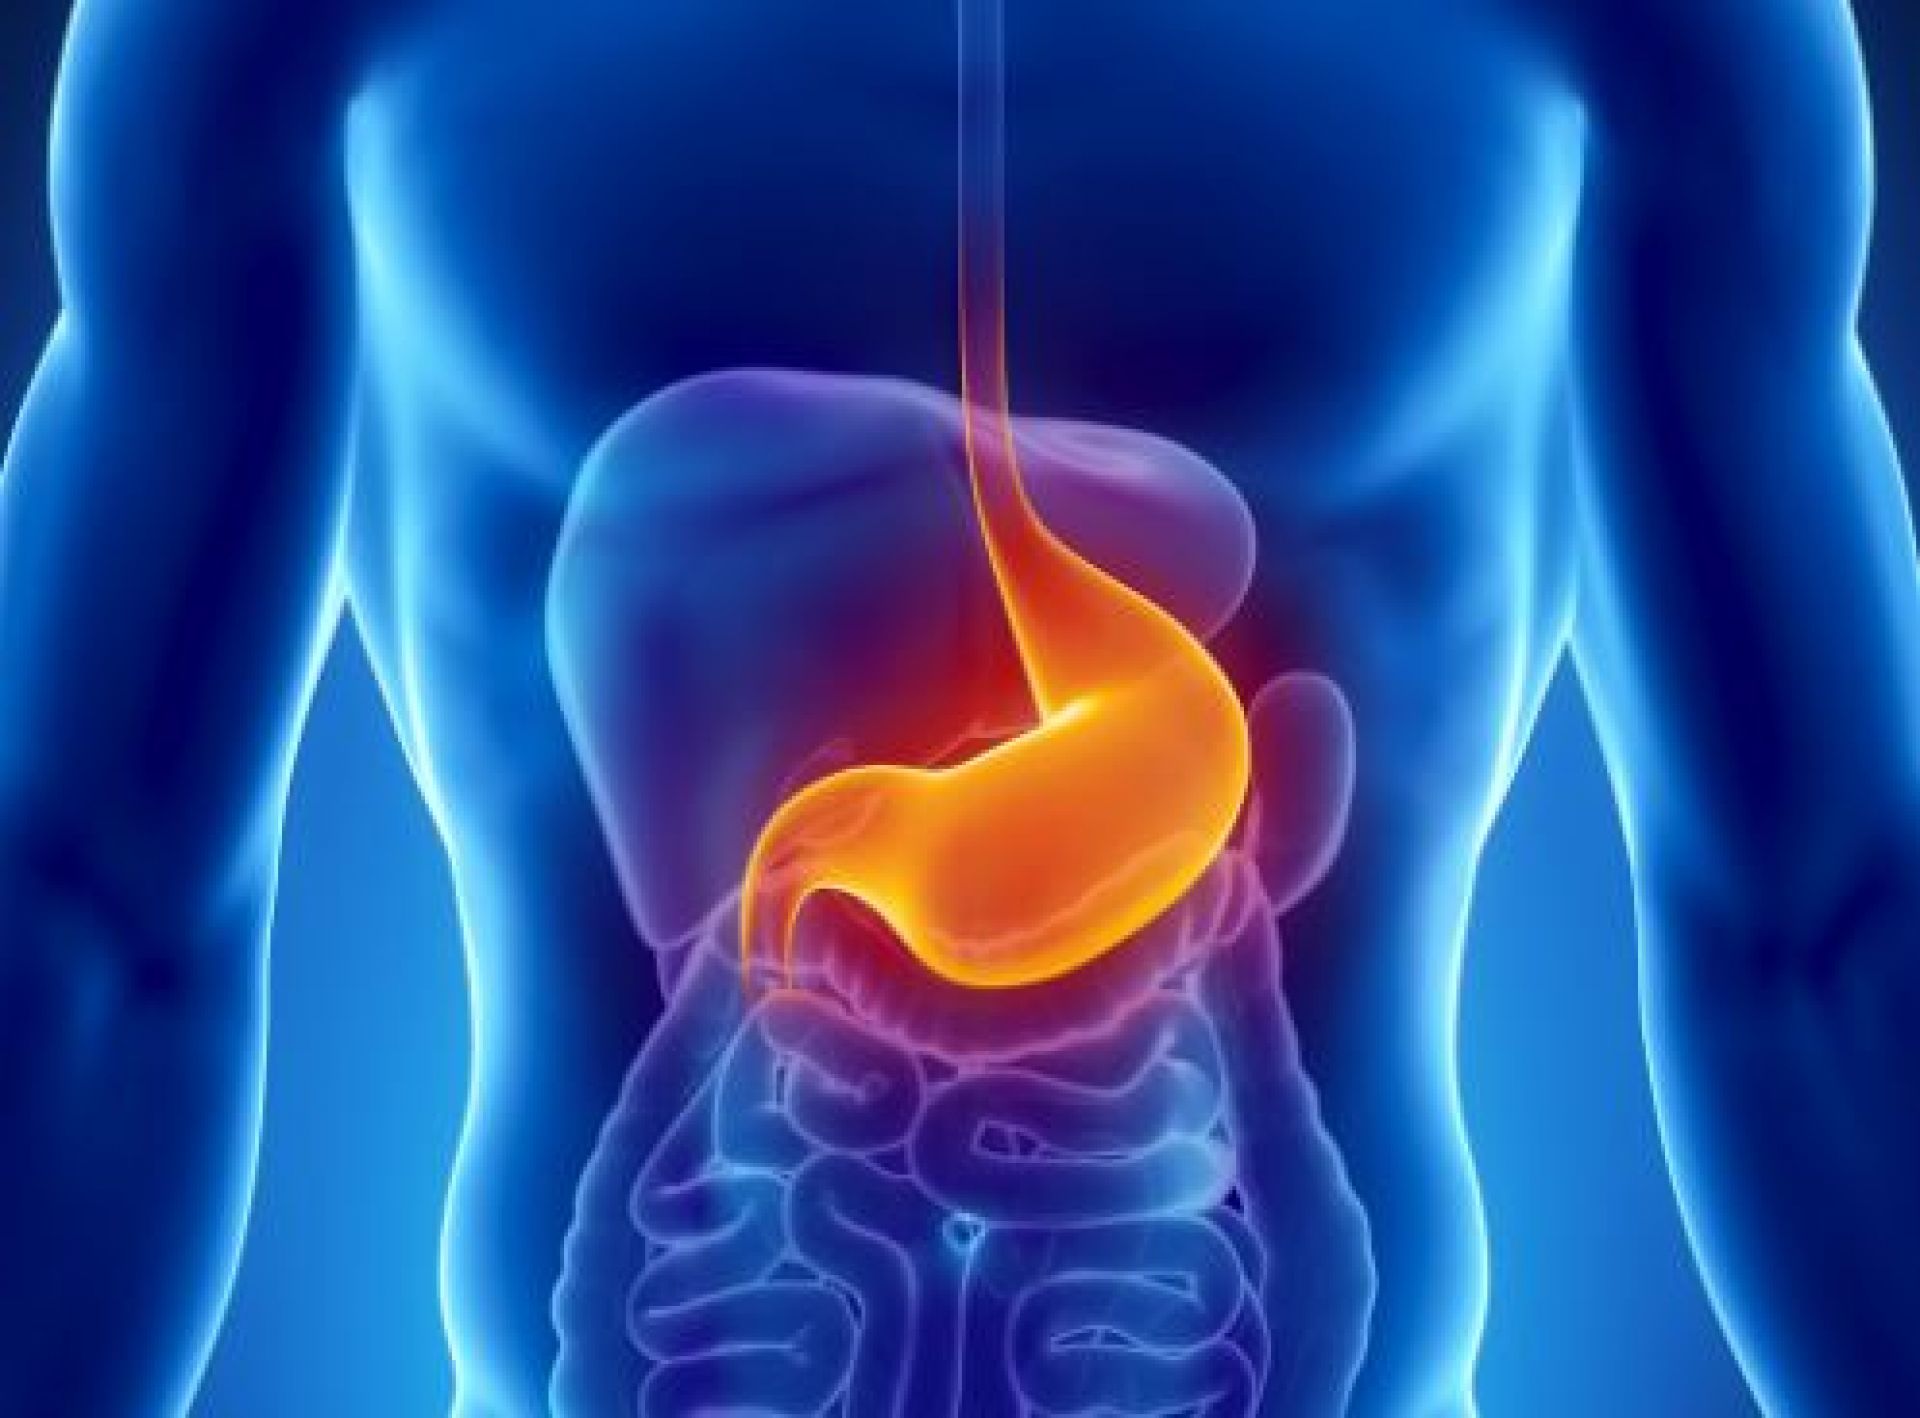 Έλκος στο στομάχι: Τι είναι ακριβώς, αίτια, συμπτώματα και σωστή αντιμετώπιση